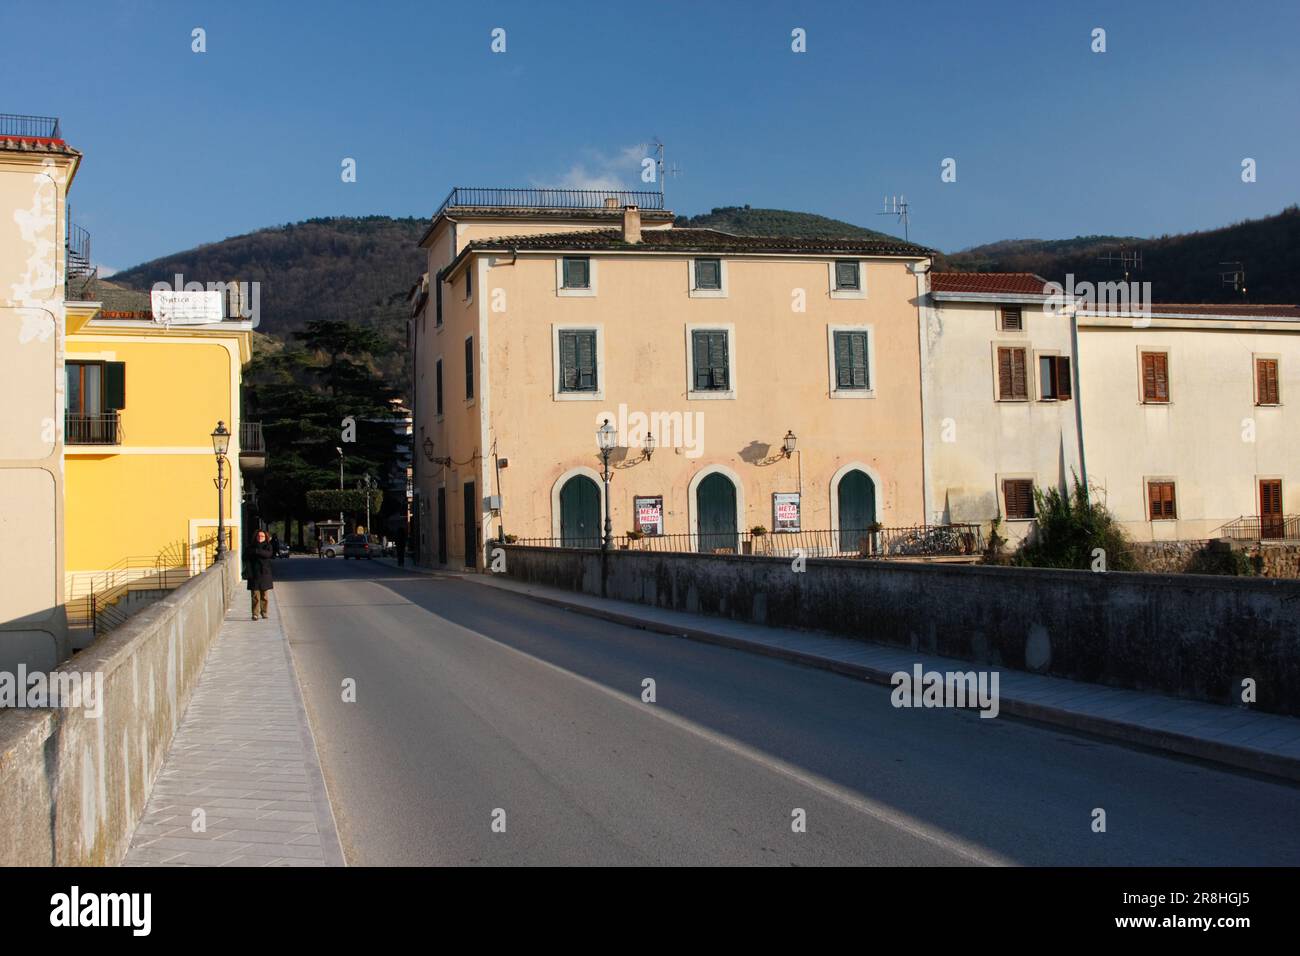 Sant'agata de' Goti. Province de Benevento. Campanie. Italie Banque D'Images